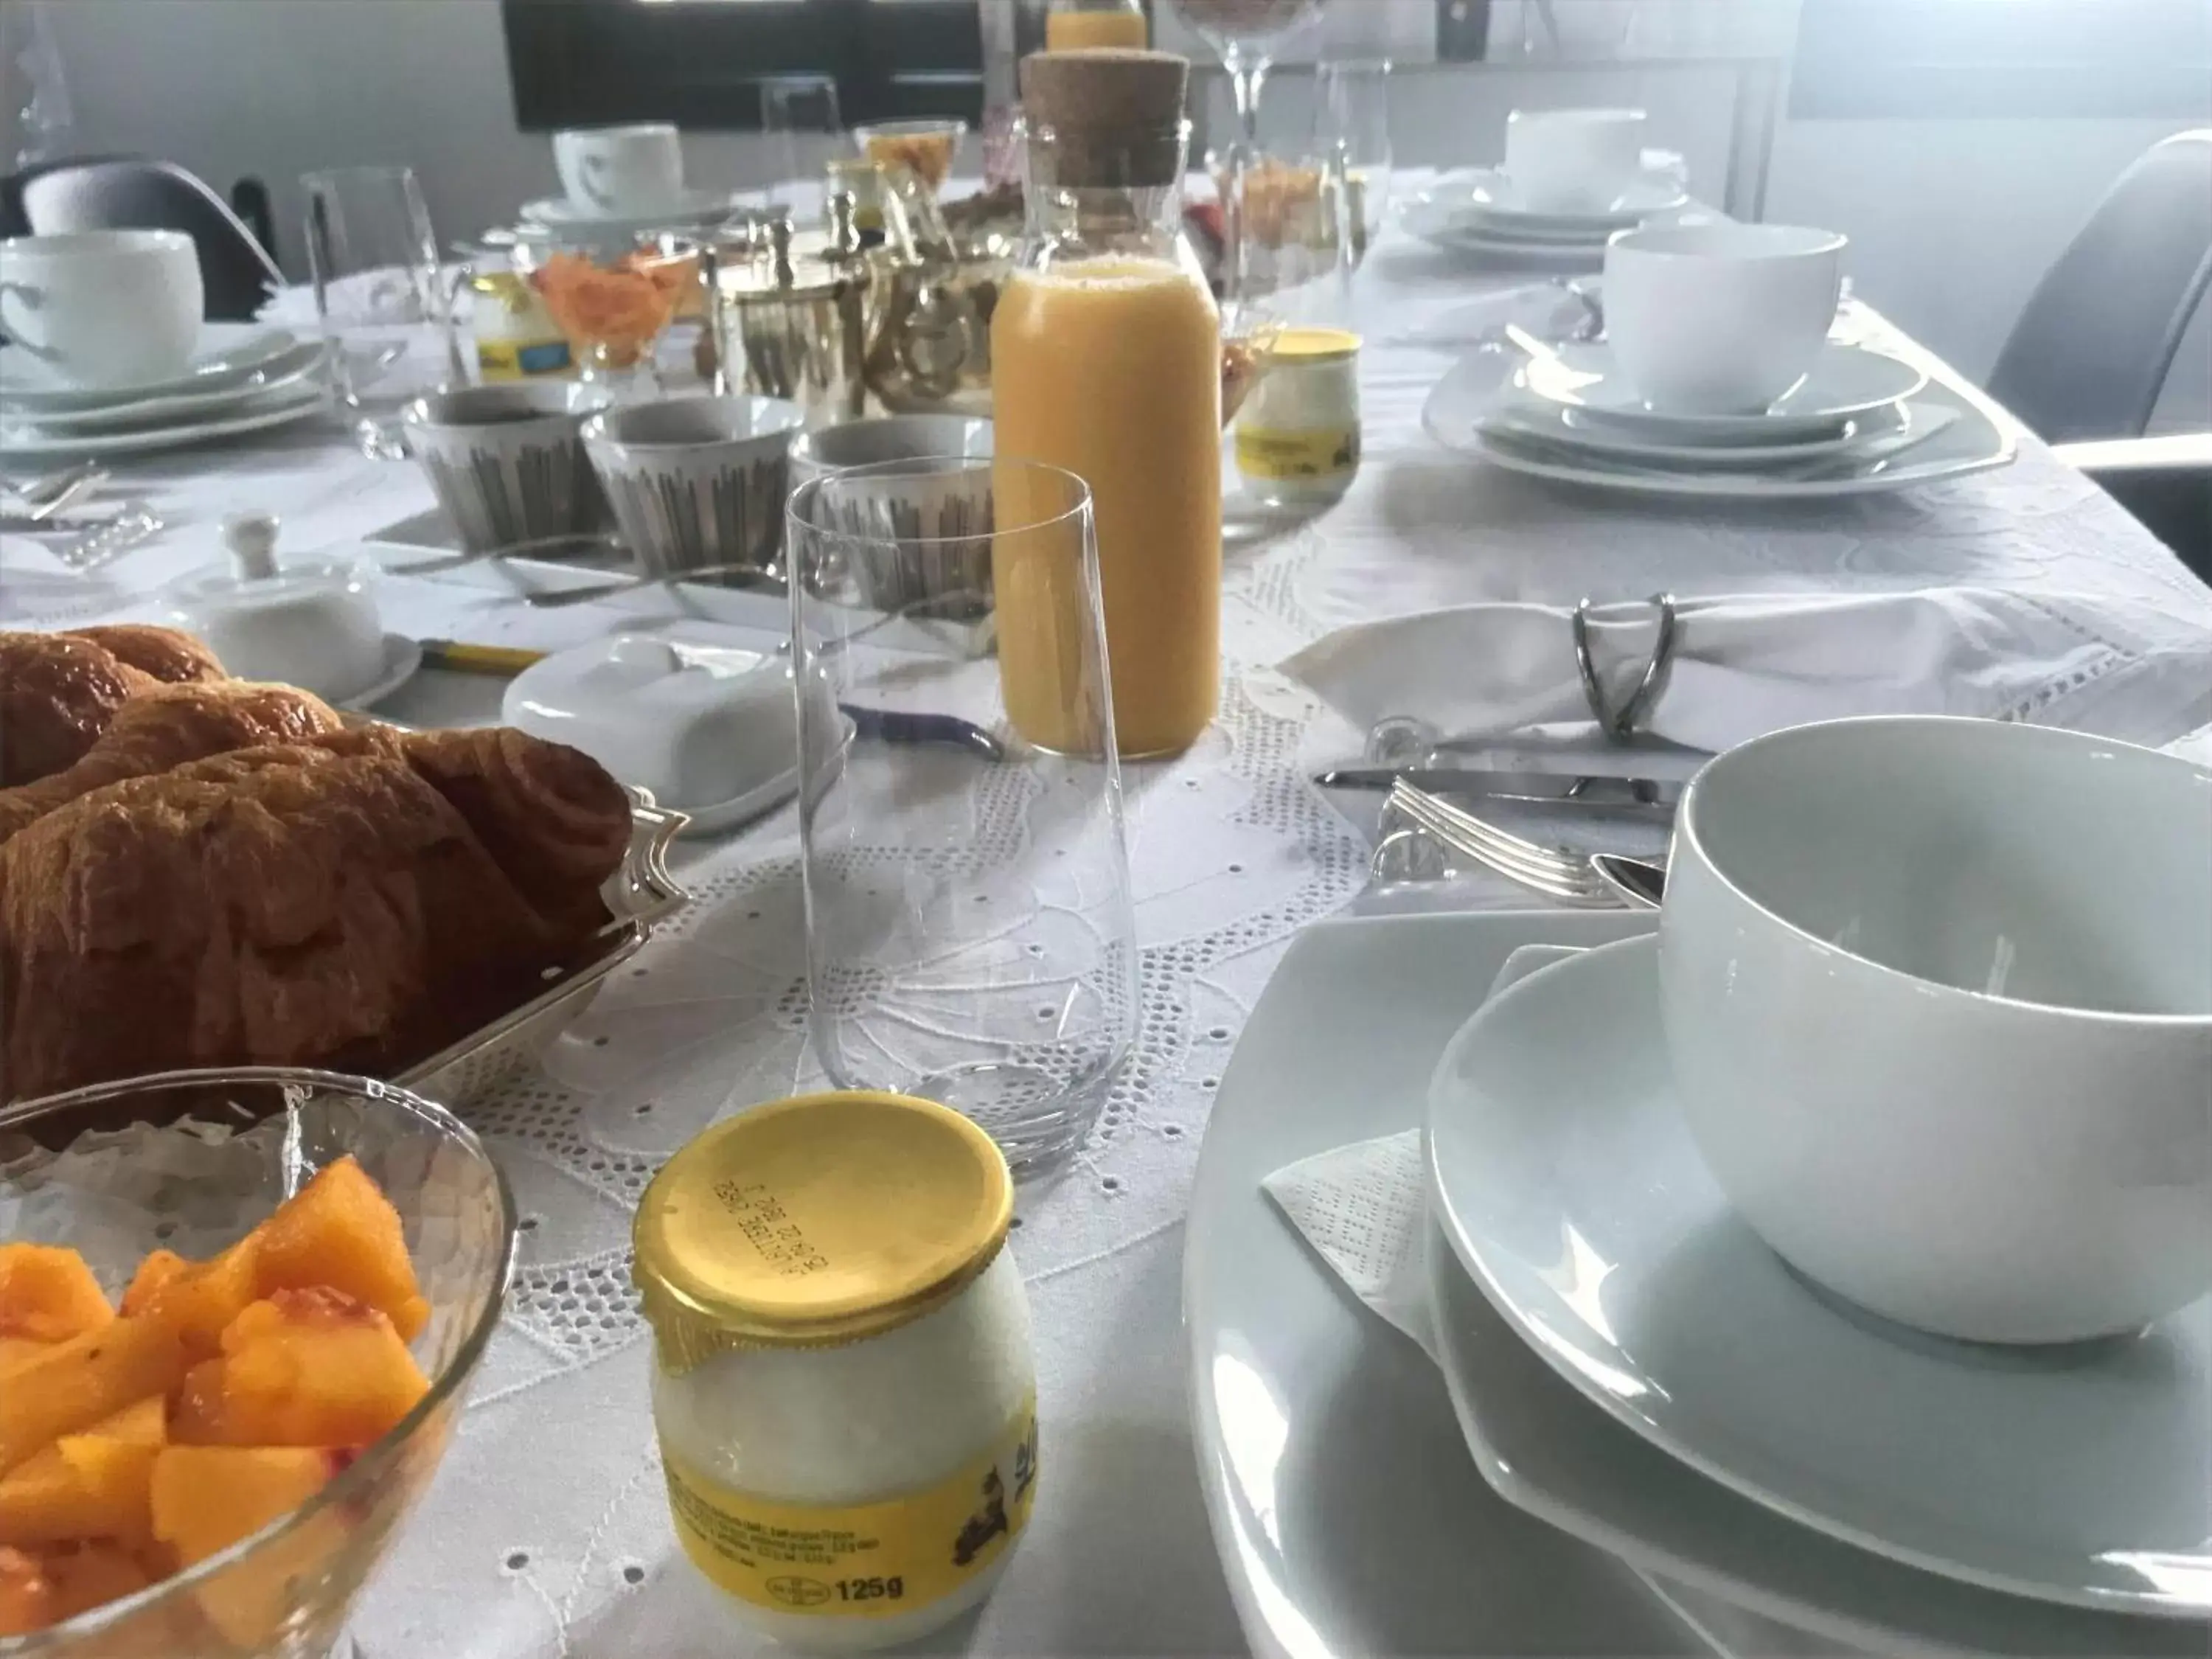 Continental breakfast in La Maison de Milie